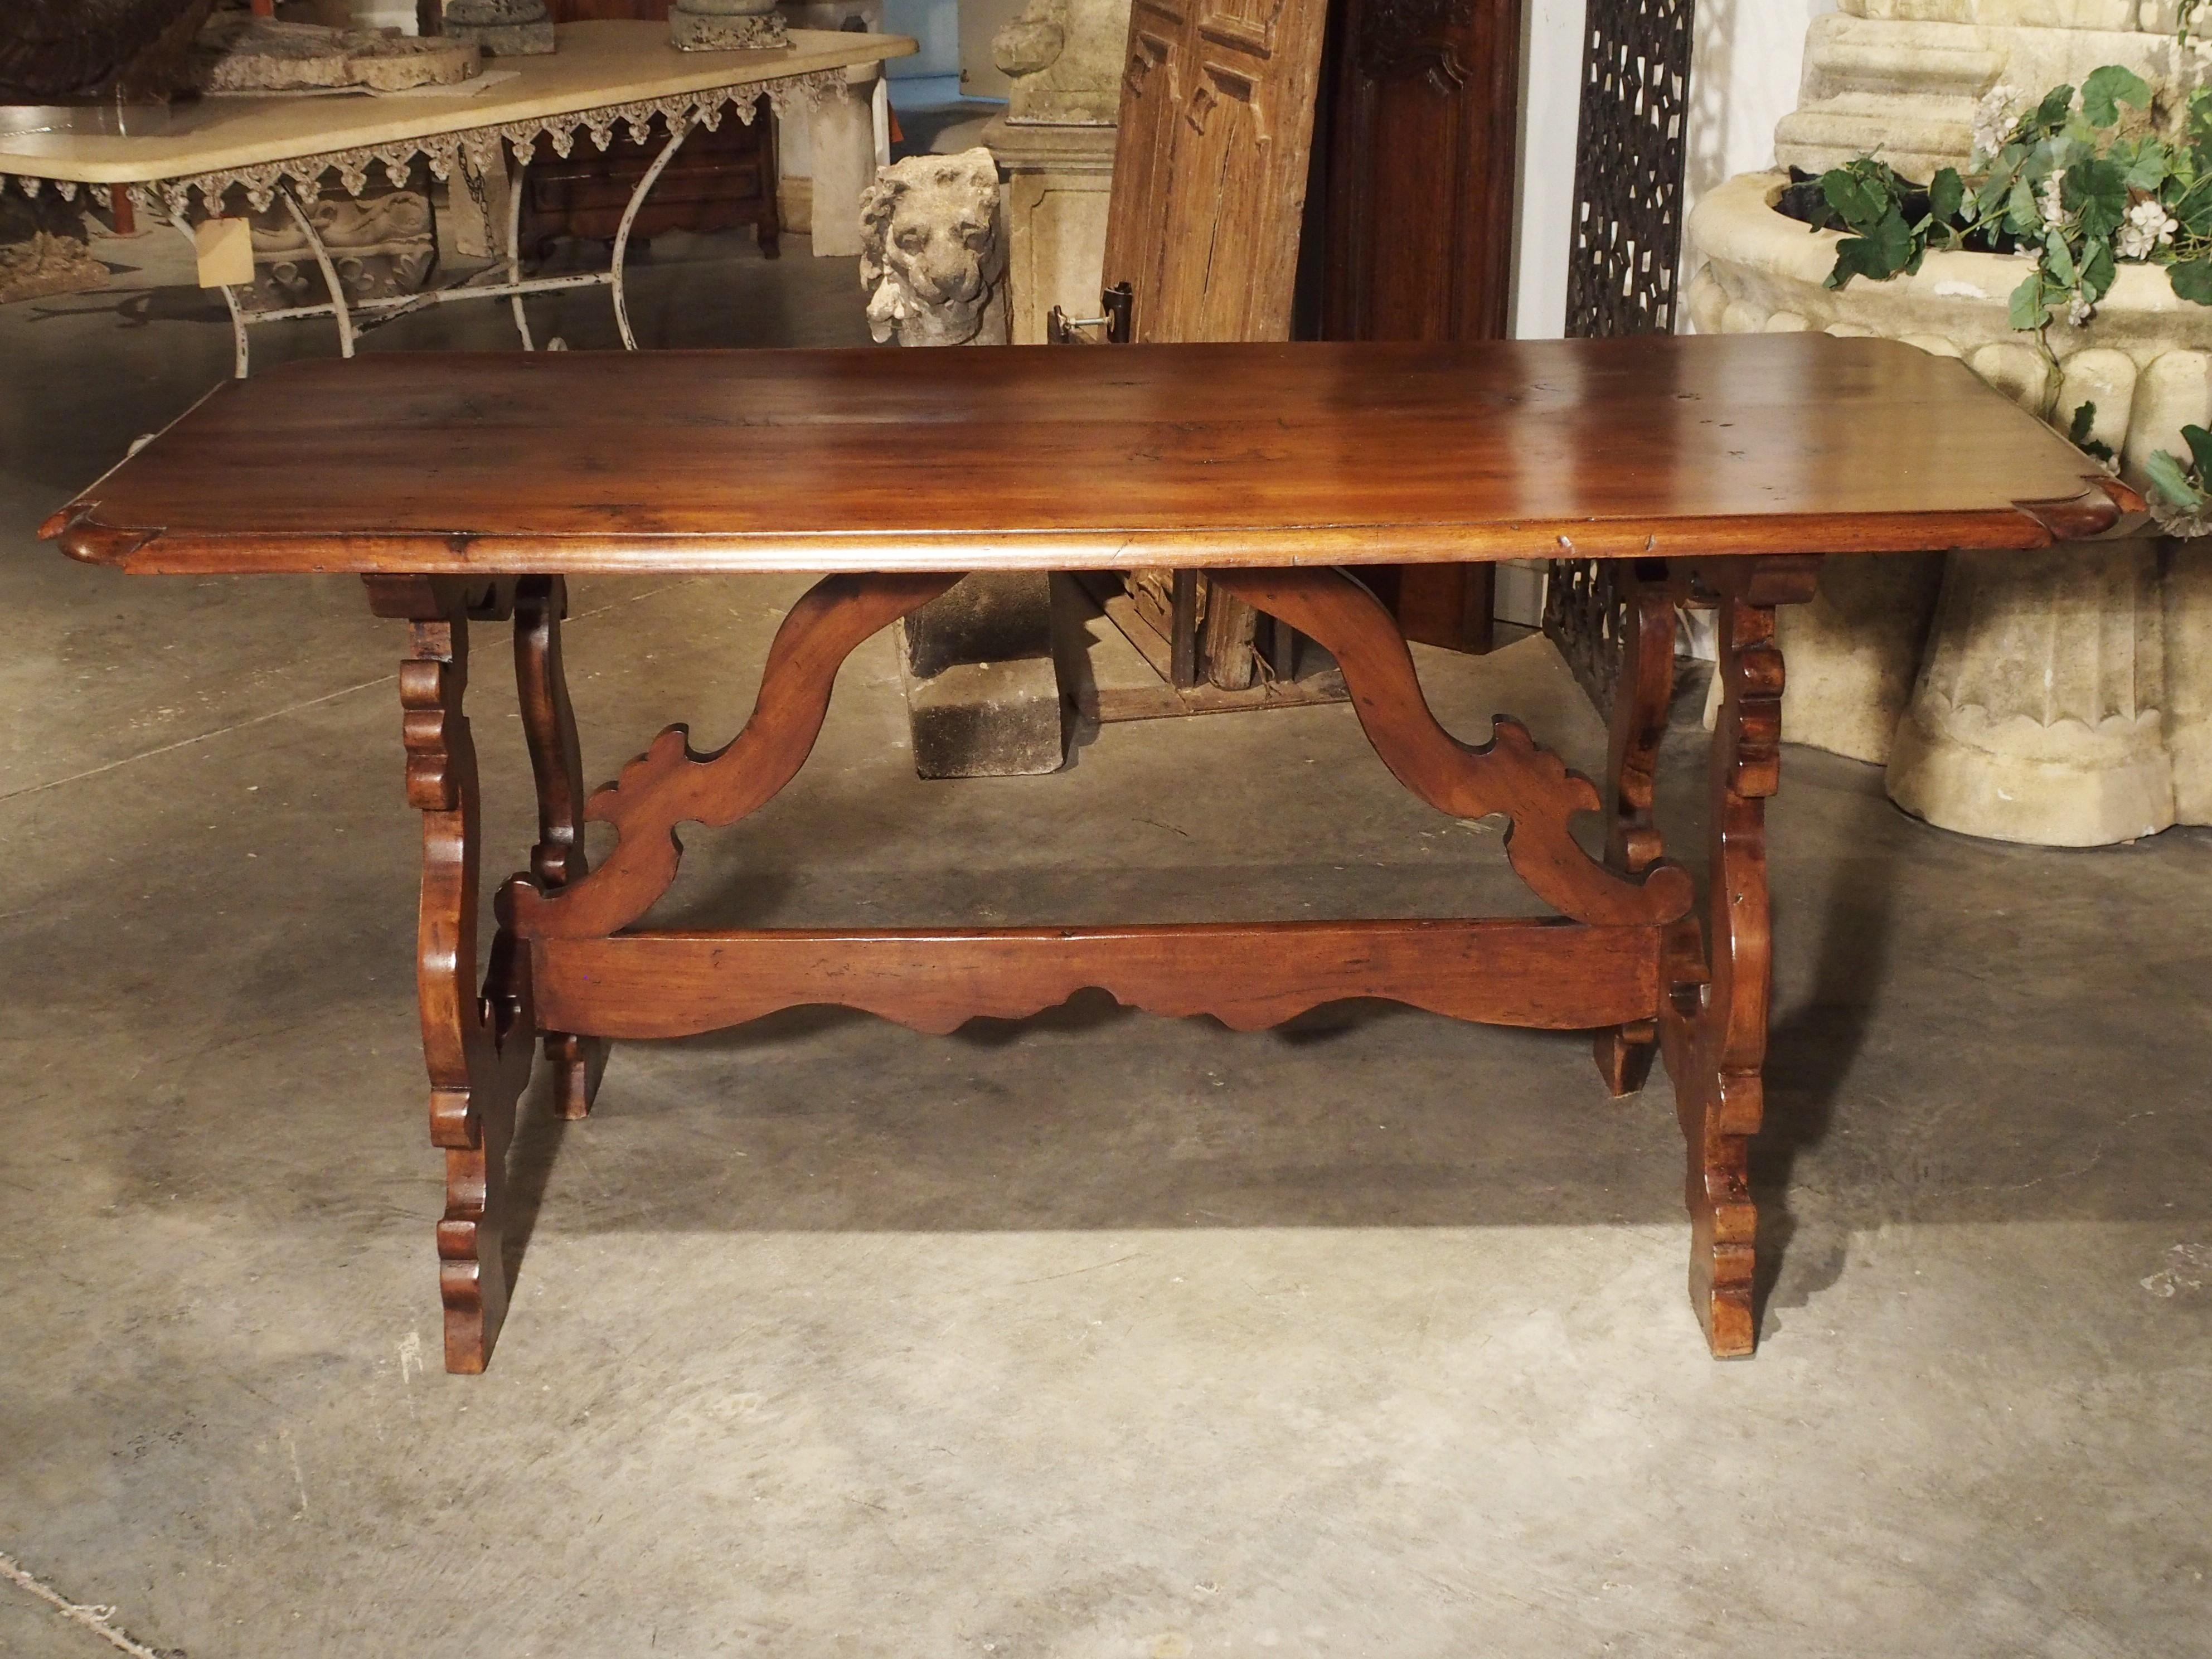 Datant du XIXe siècle, cette table toscane présente un plateau aux coins arqués et un magnifique châssis en bois façonné. Les pieds sont ornés de volutes en forme de C et de S et d'un châssis double, l'un horizontal et les deux autres arqués vers le